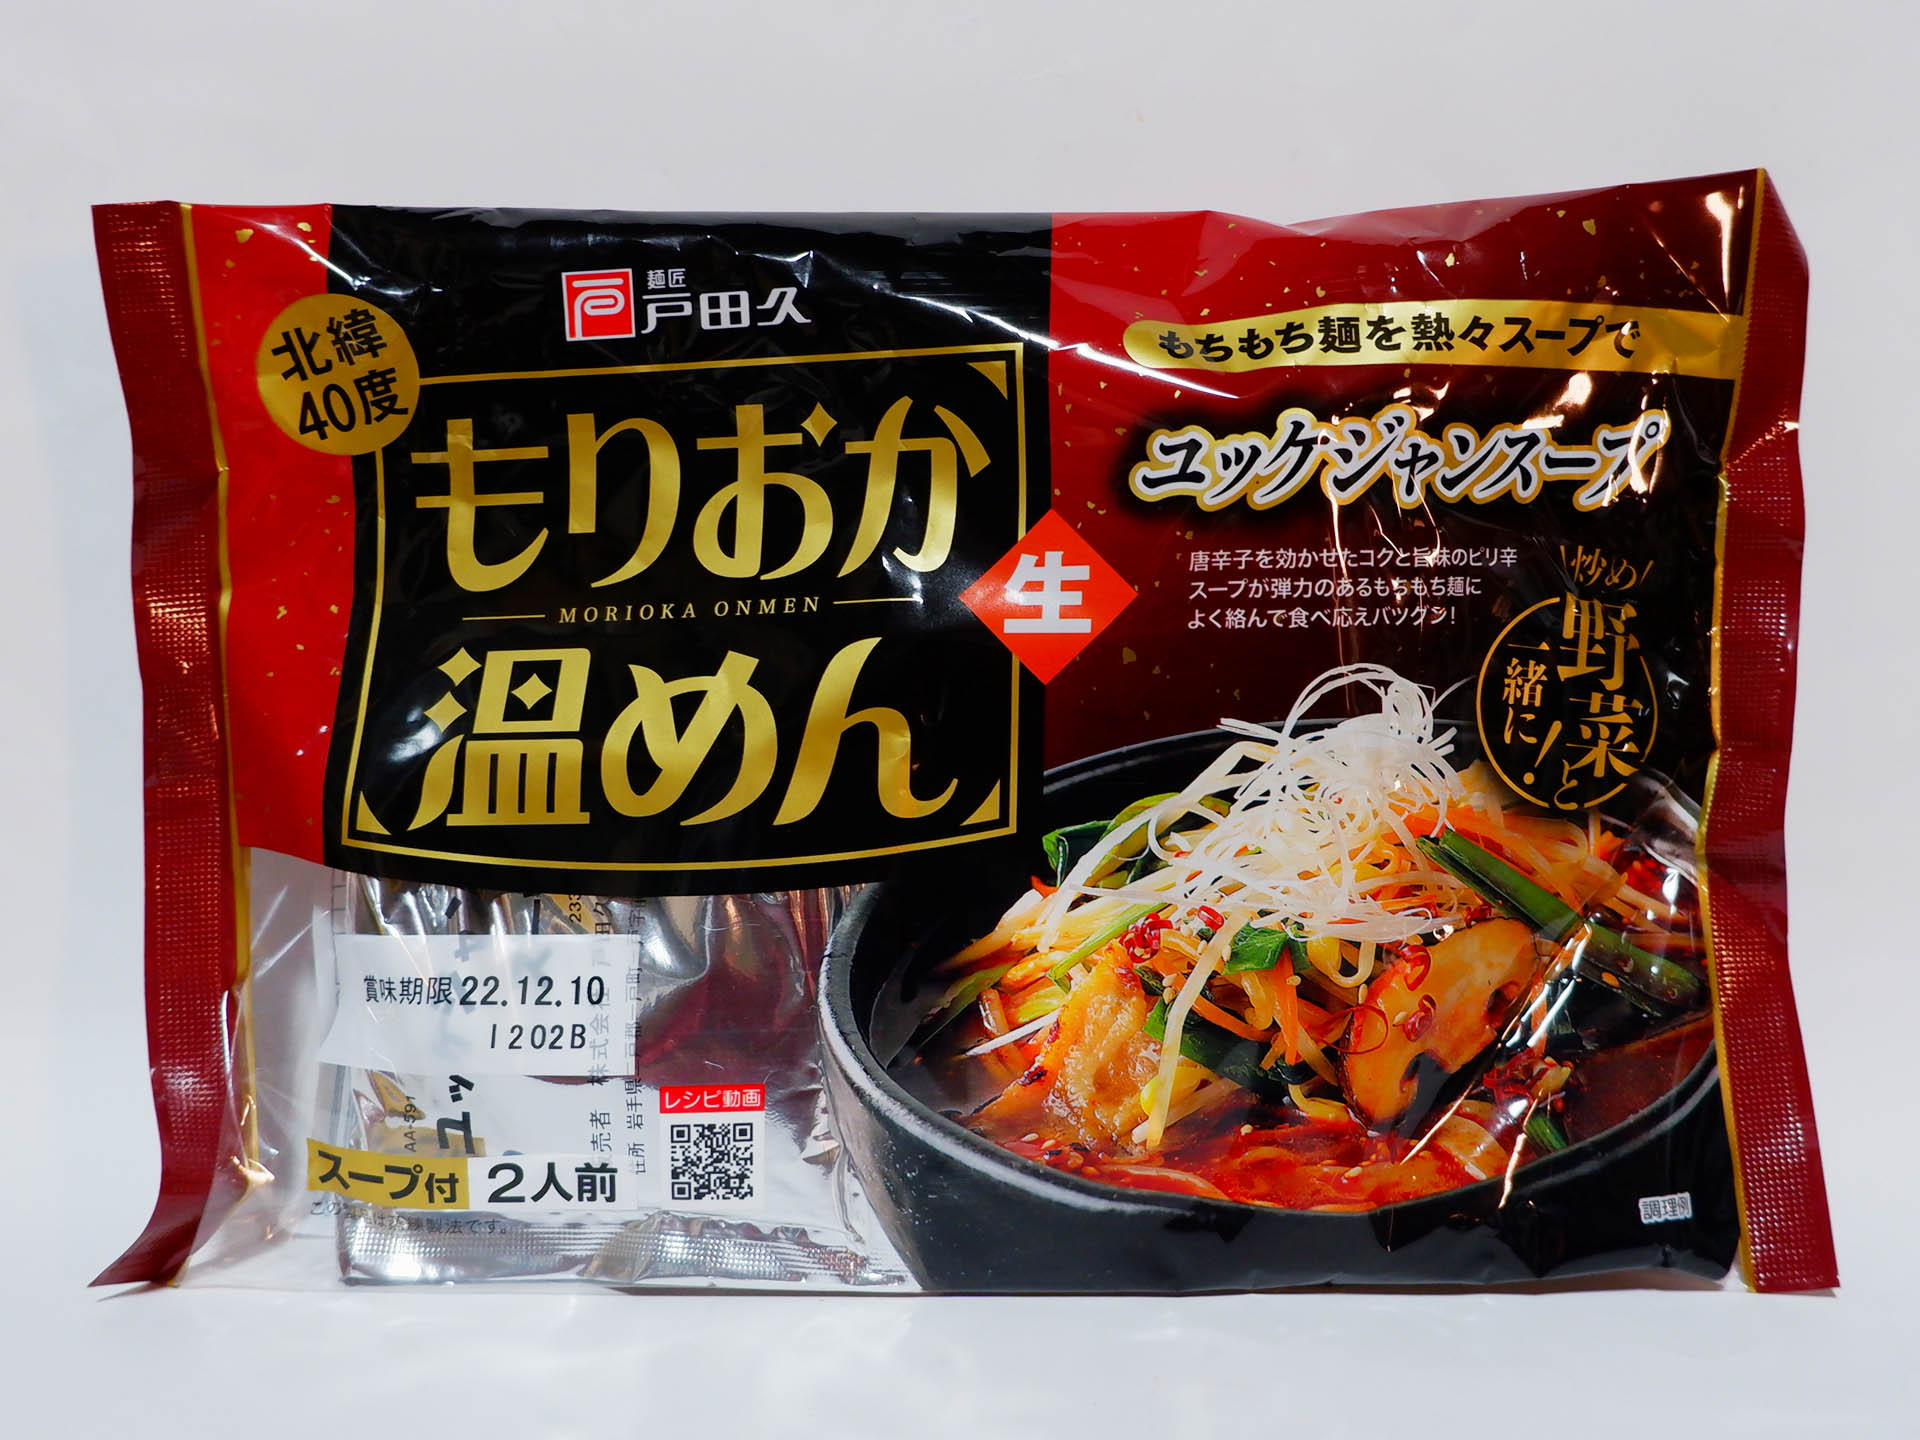 戸田久 もりおか冷麺 北緯40度 2食入 ×3袋 通販